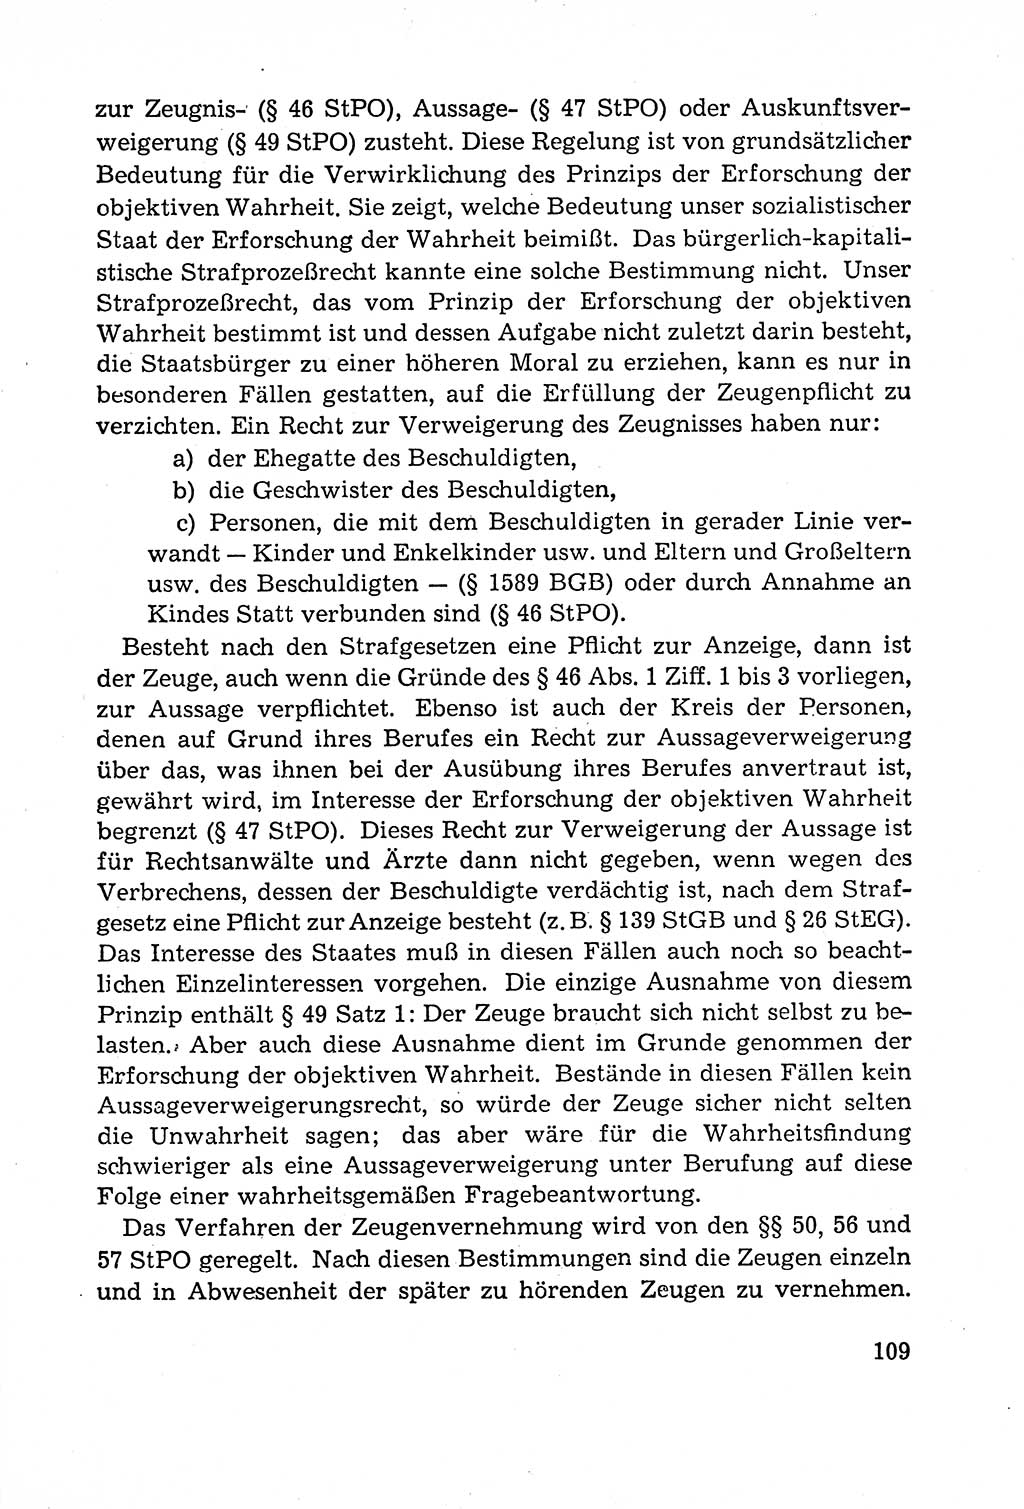 Leitfaden des Strafprozeßrechts der Deutschen Demokratischen Republik (DDR) 1959, Seite 109 (LF StPR DDR 1959, S. 109)